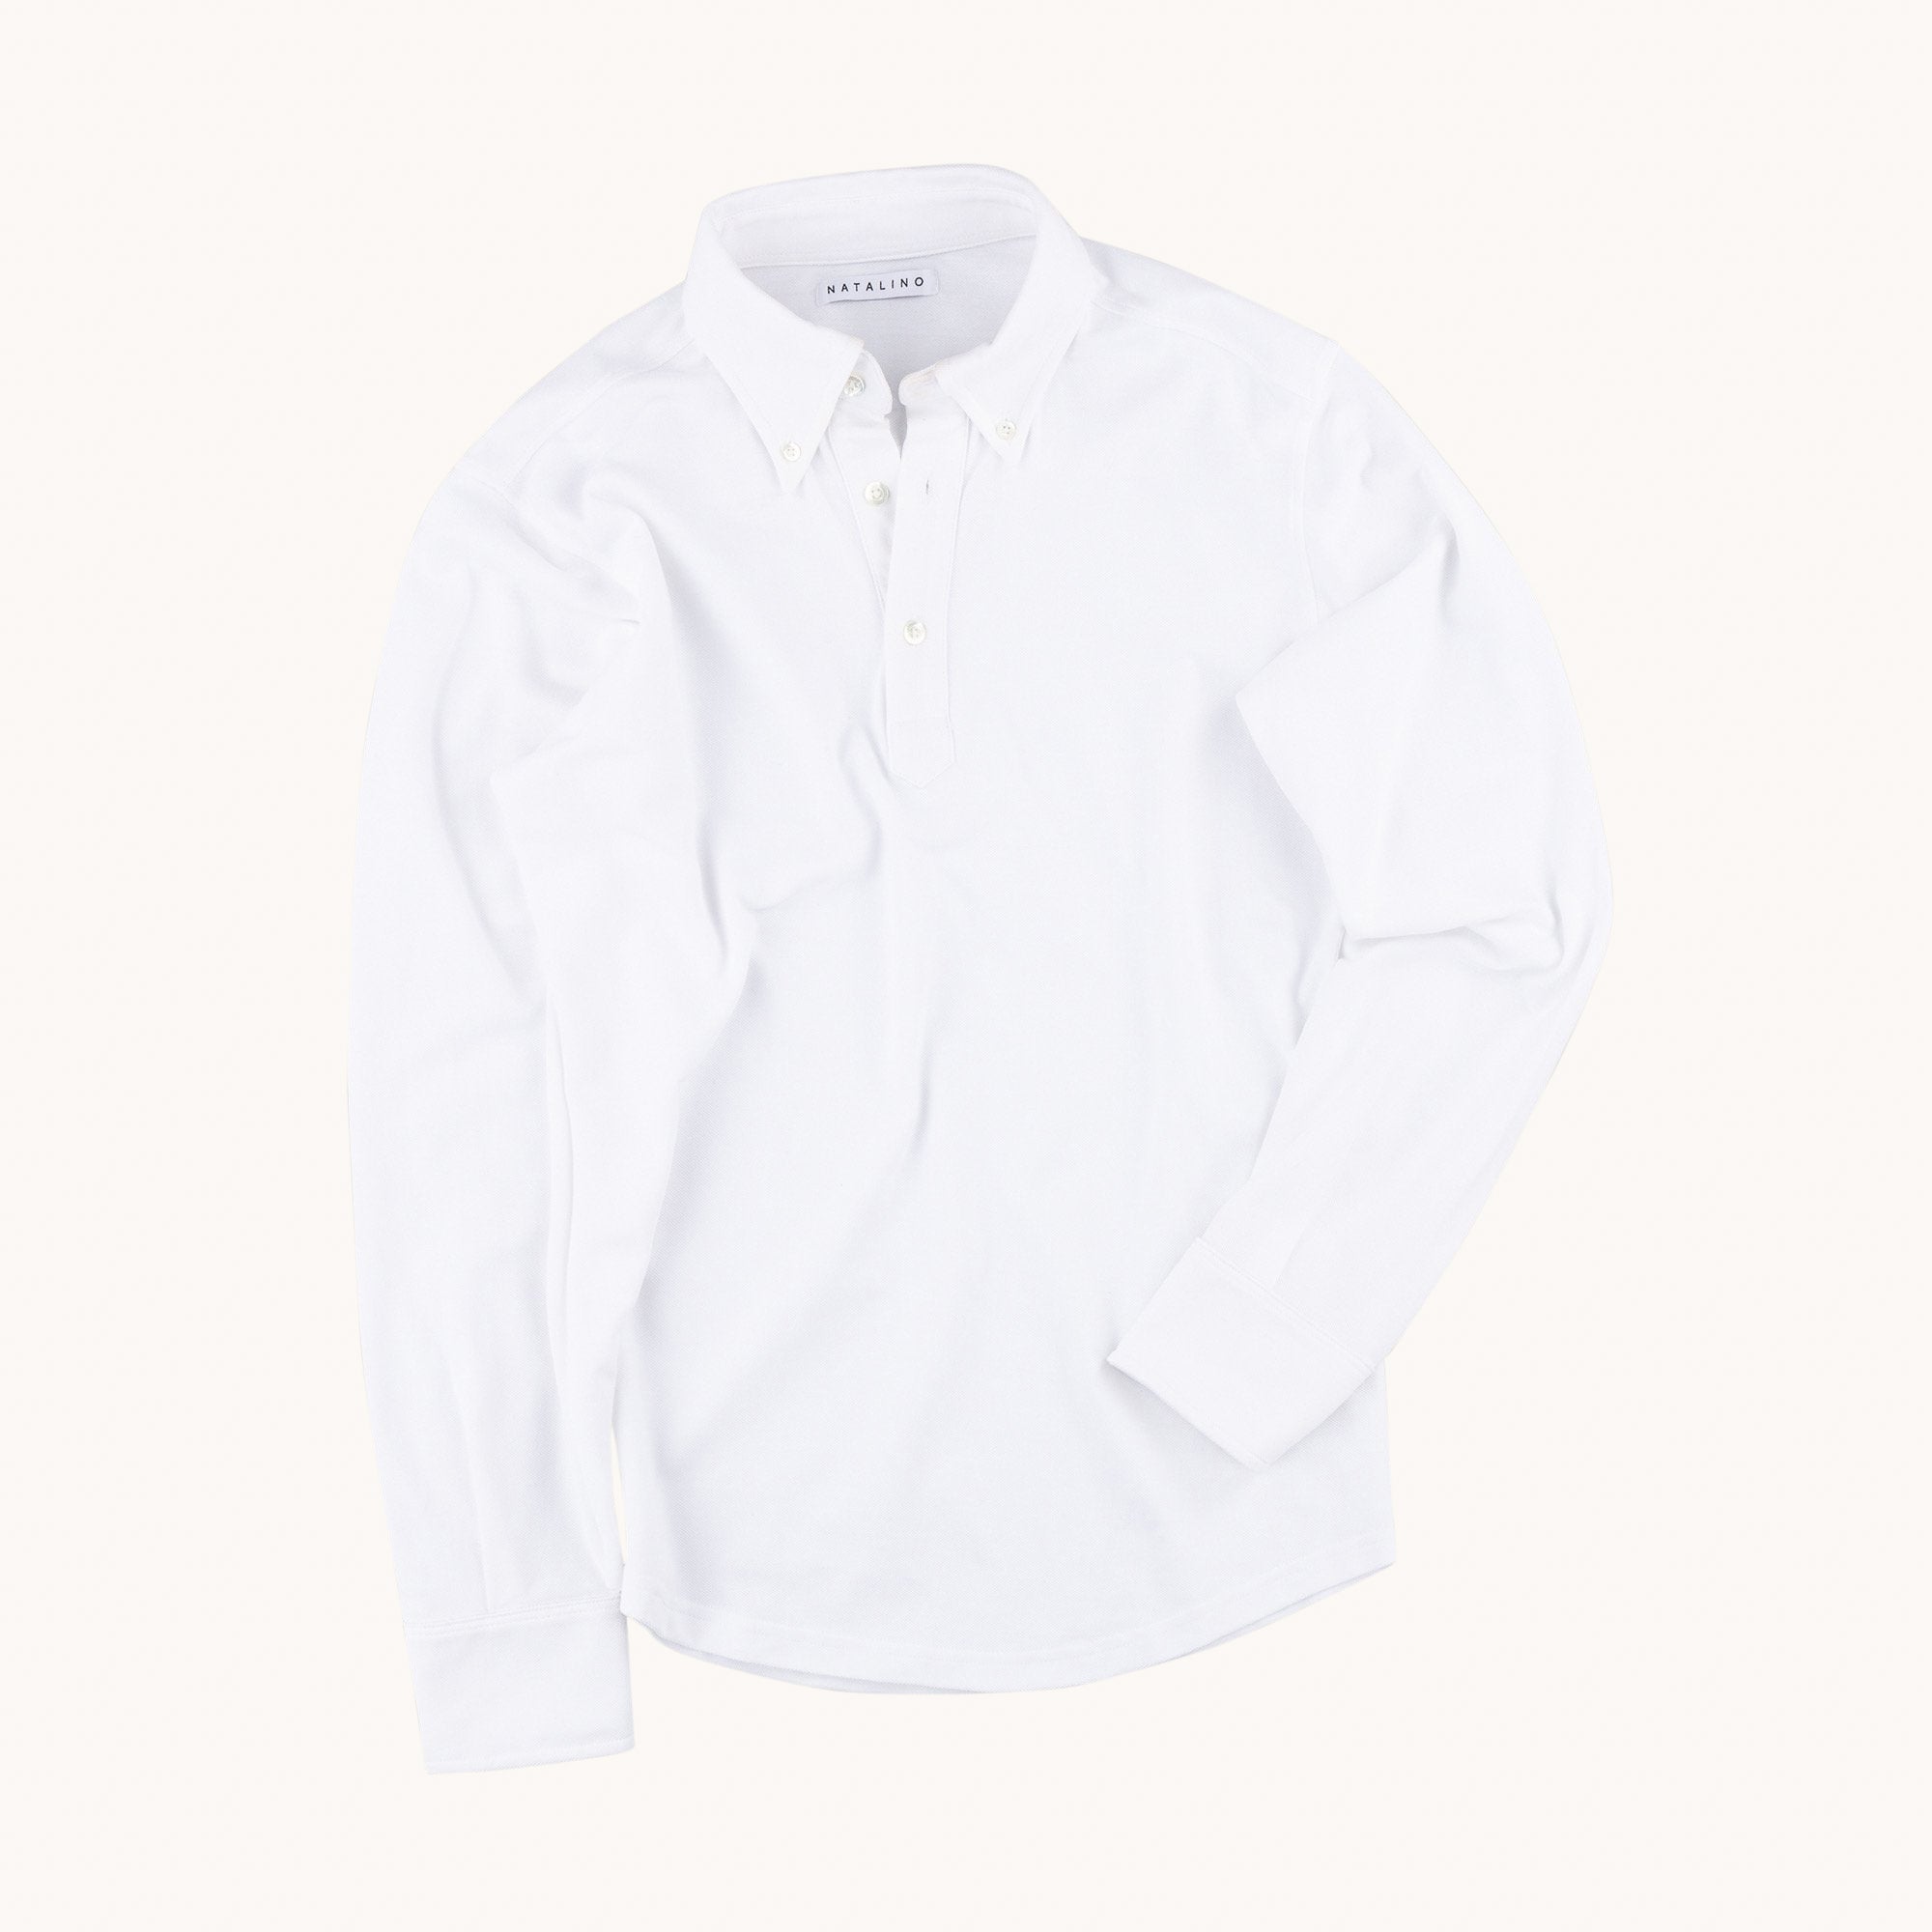 white polo shirt long sleeve